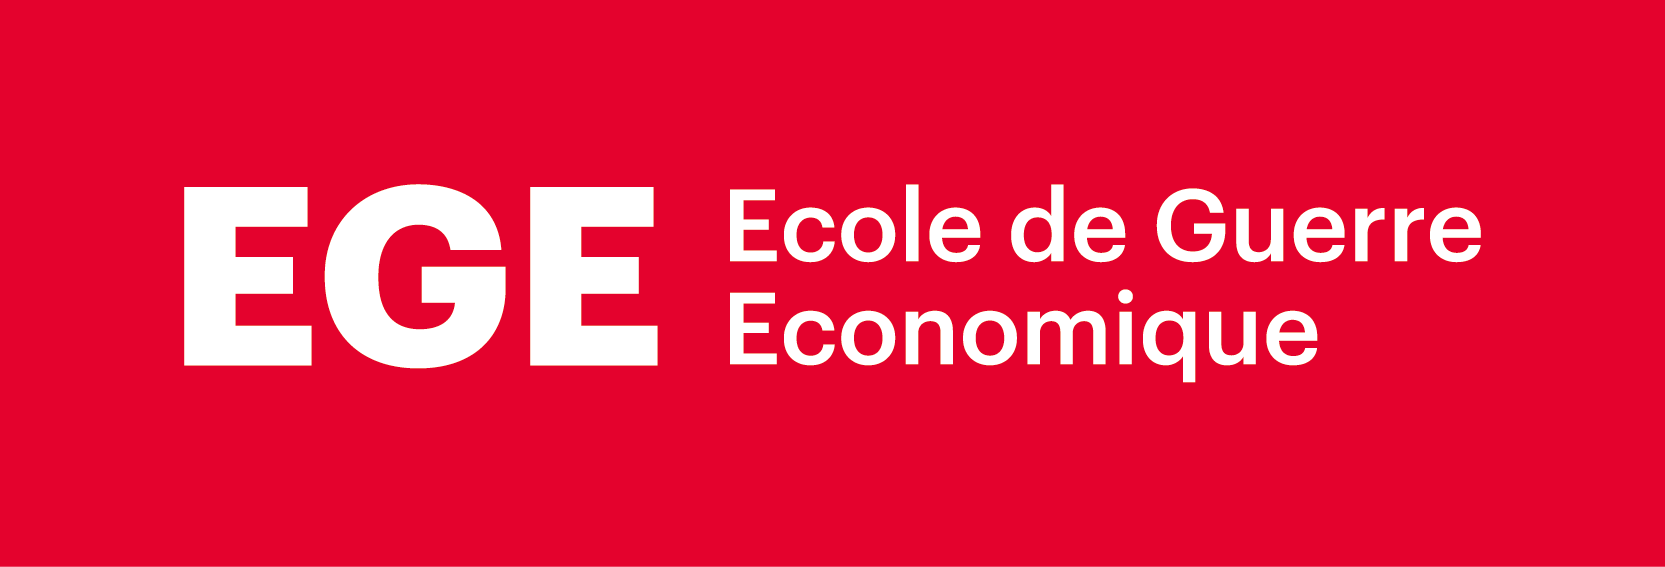 ecole-de-guerre-economique-cover